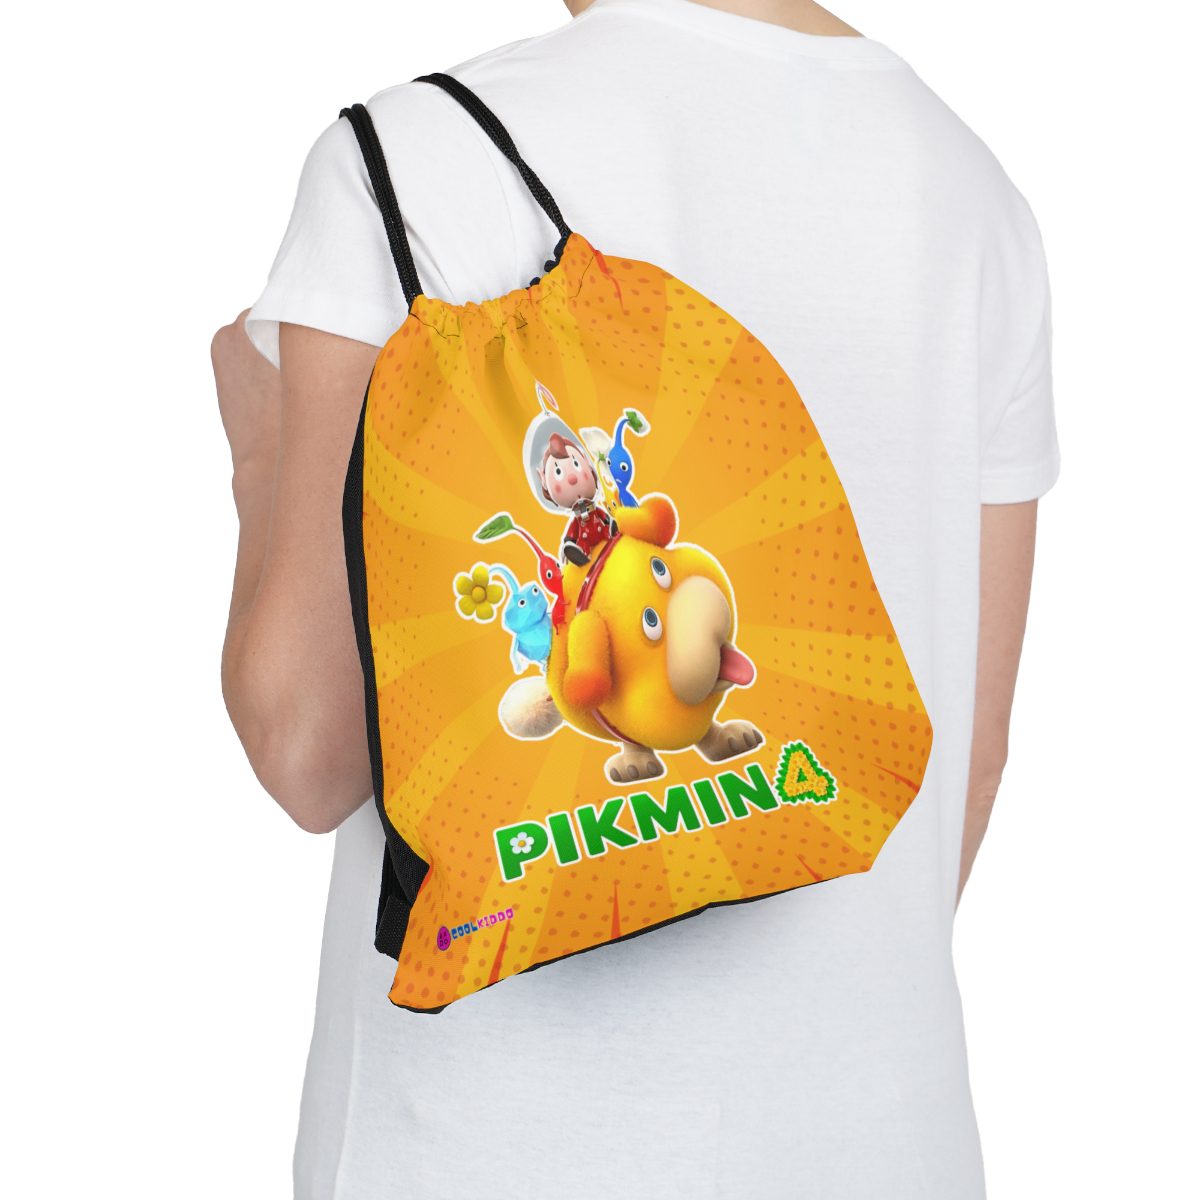 PIKMIN 4 Video Game Yellow Drawstring Bag Cool Kiddo 18